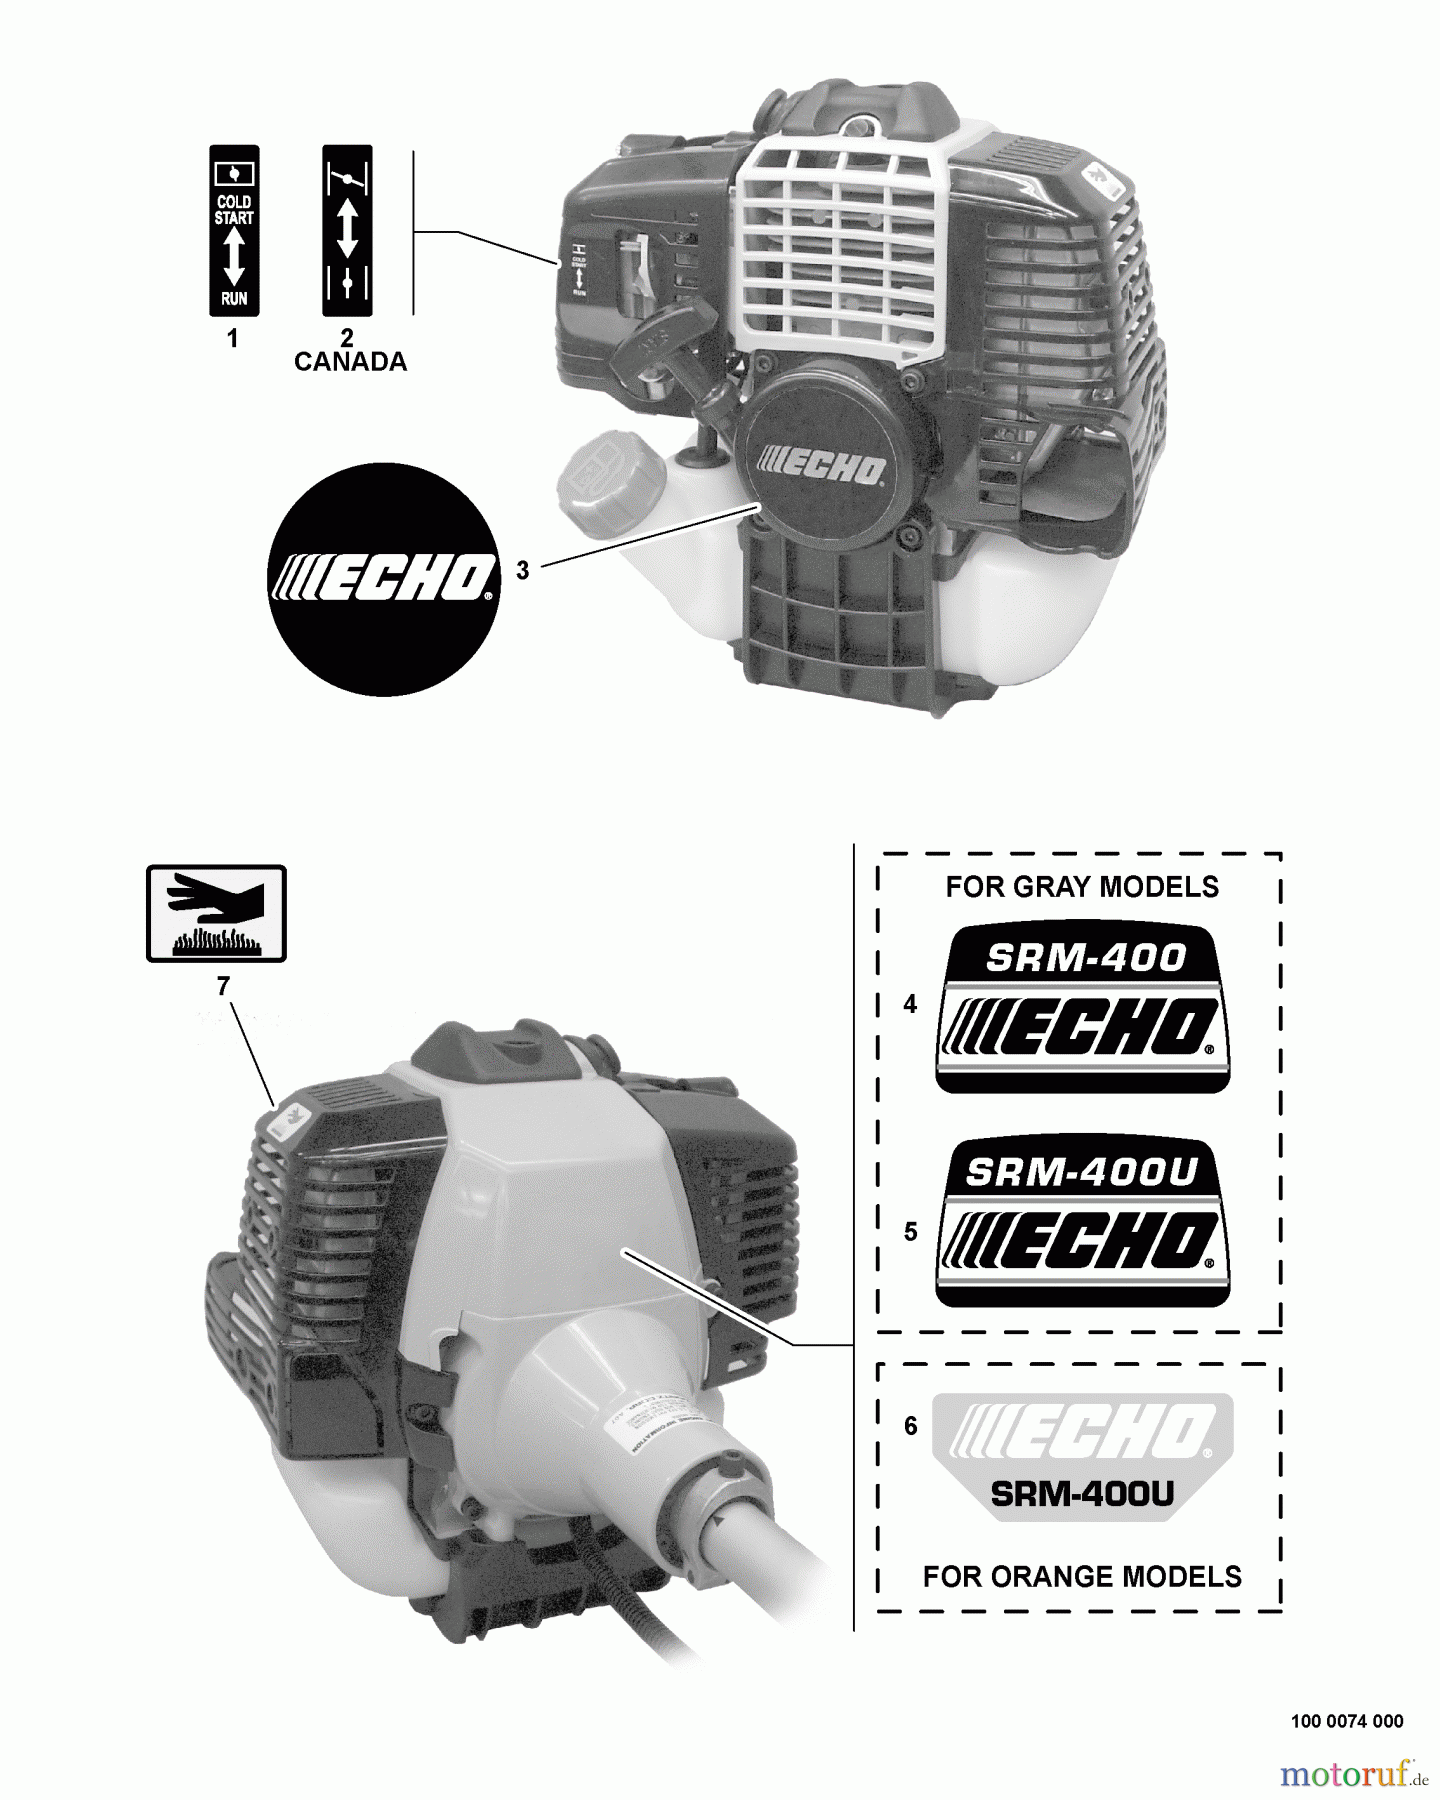  Echo Trimmer, Faden / Bürste SRM-400U - Echo String Trimmer/Brush Cutter, S/N:04001001 - 04001494 Labels